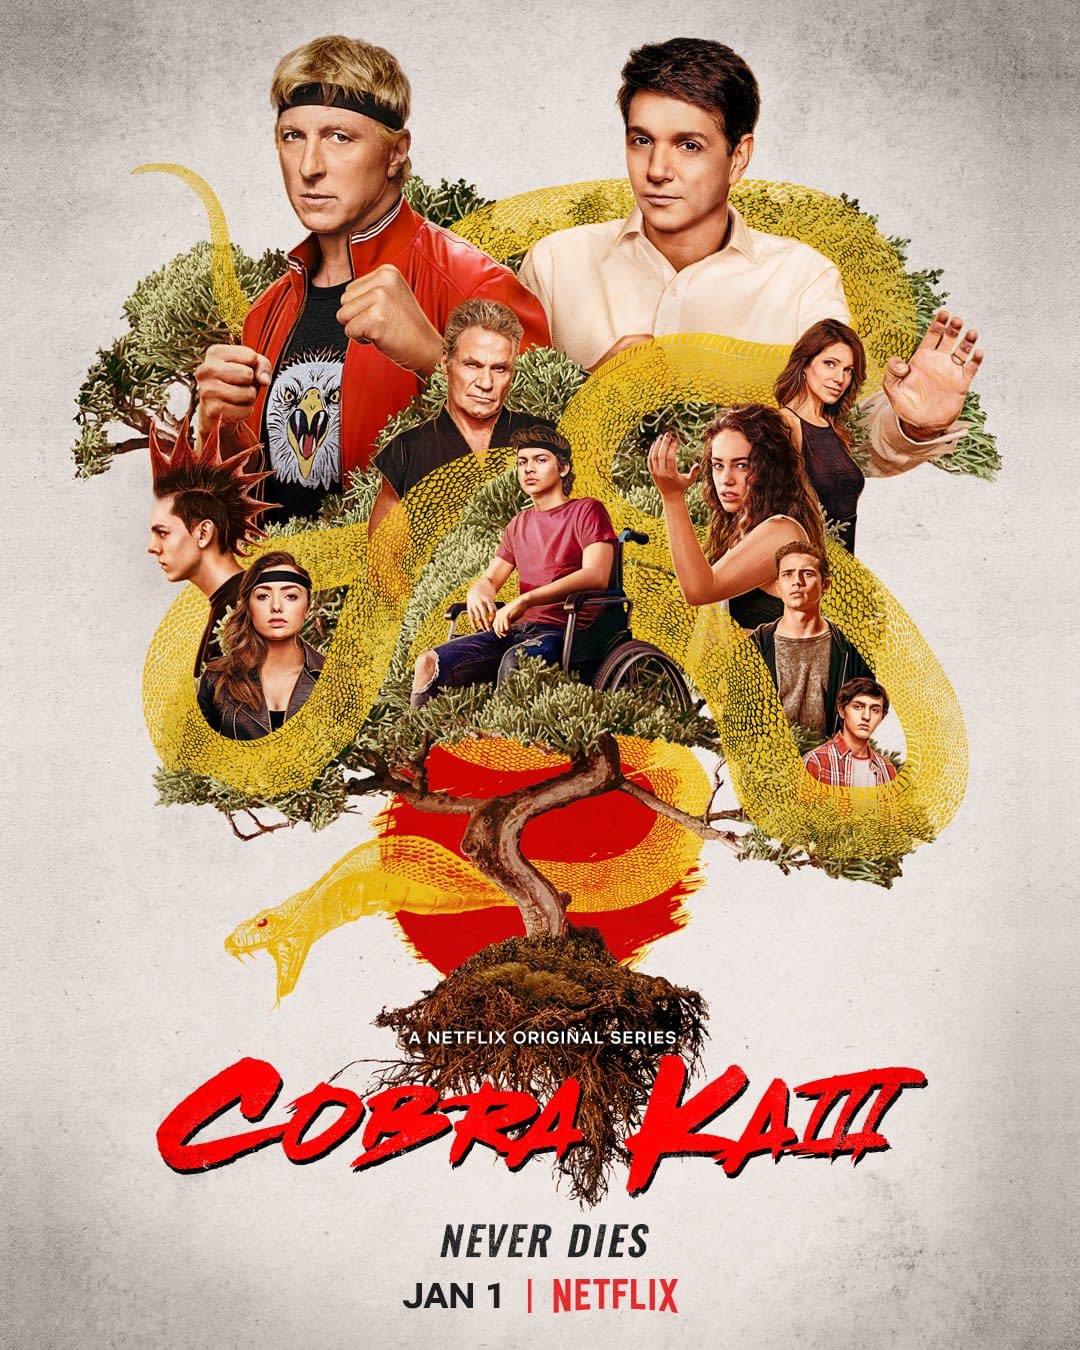 Cobra Kai Season 3 Poster Are You Team Cobra Kai Or Team Miyagi Do